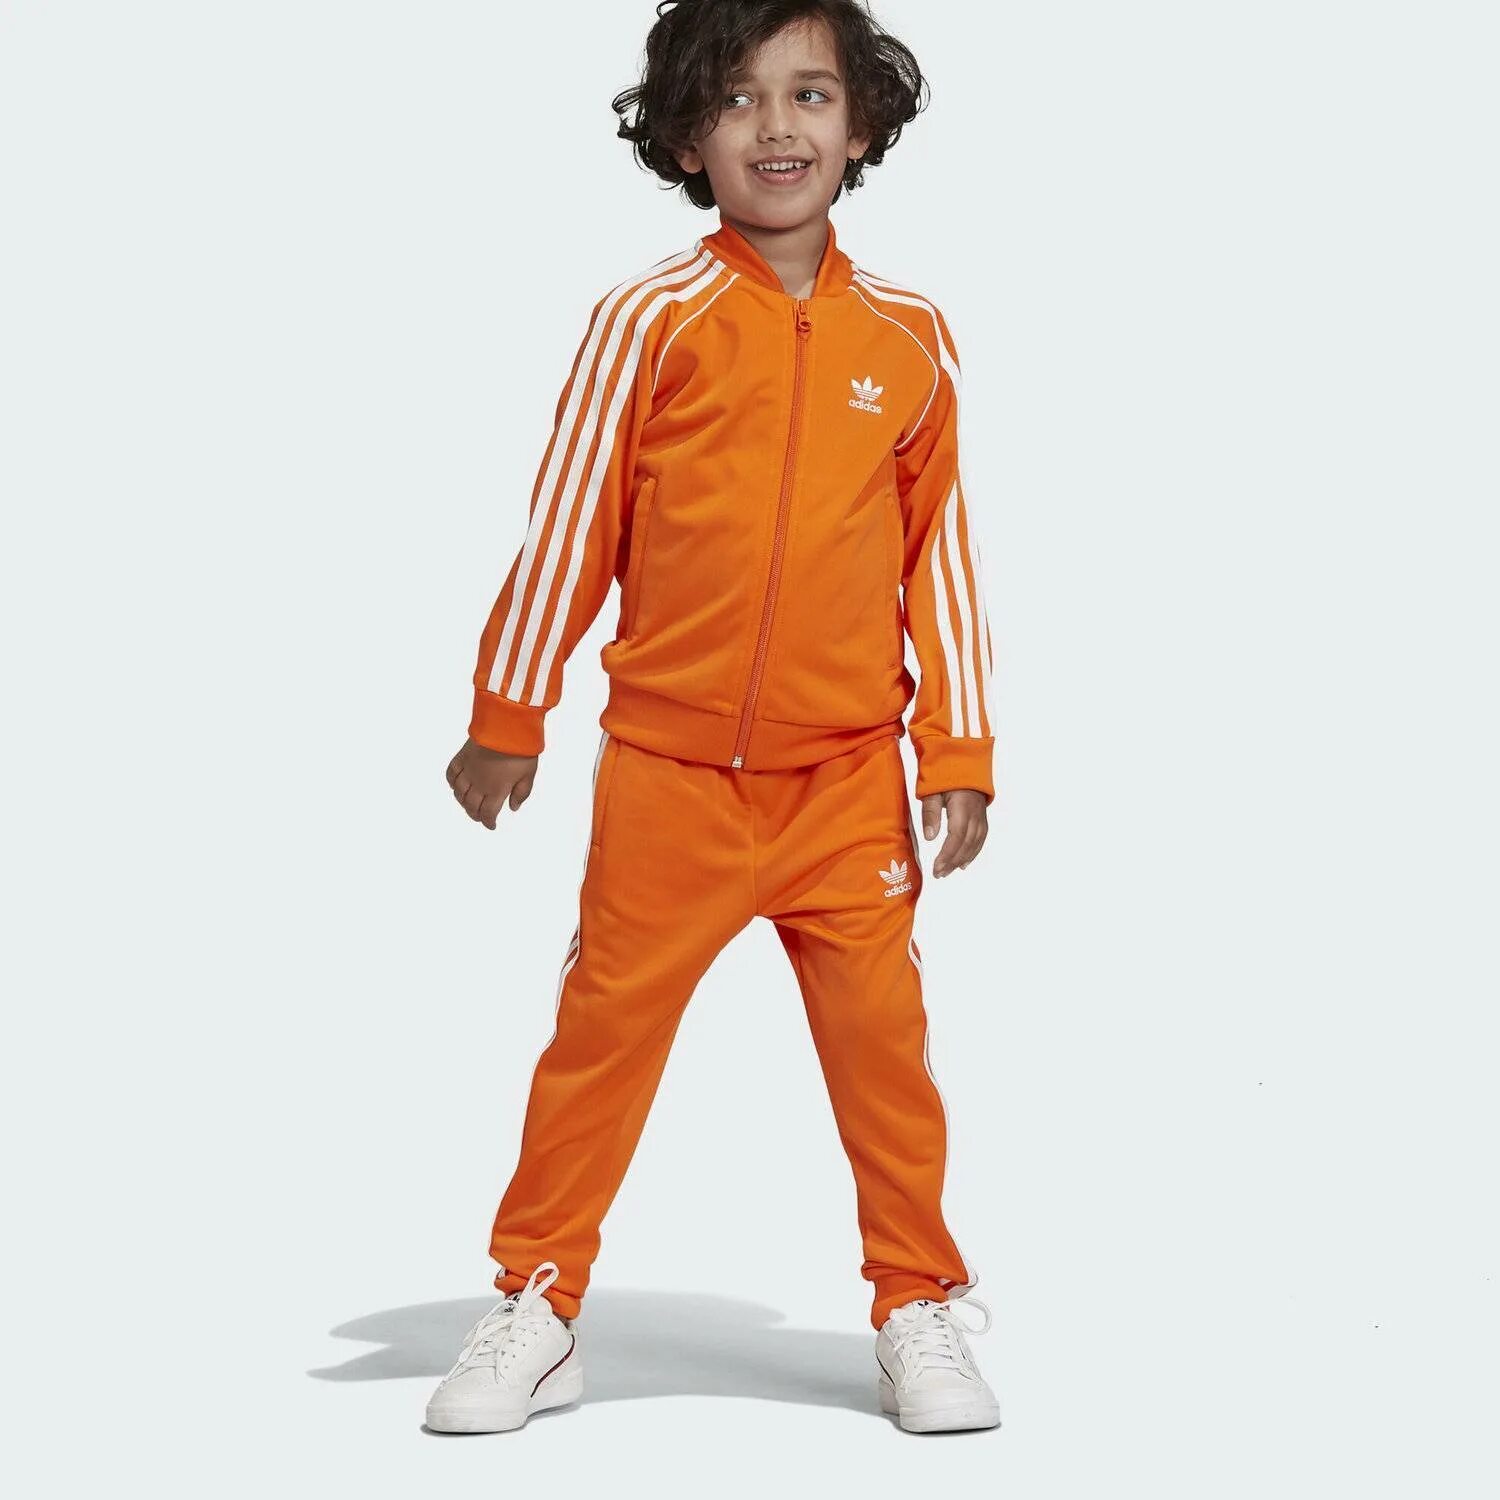 Оранжевый спортивный костюм. Костюм адидас SST оранжевый. Костюм адидас ориджинал Орандж. Оранжевый спортивный костюм мужской адидас. Adidas Originals Kids костюм.